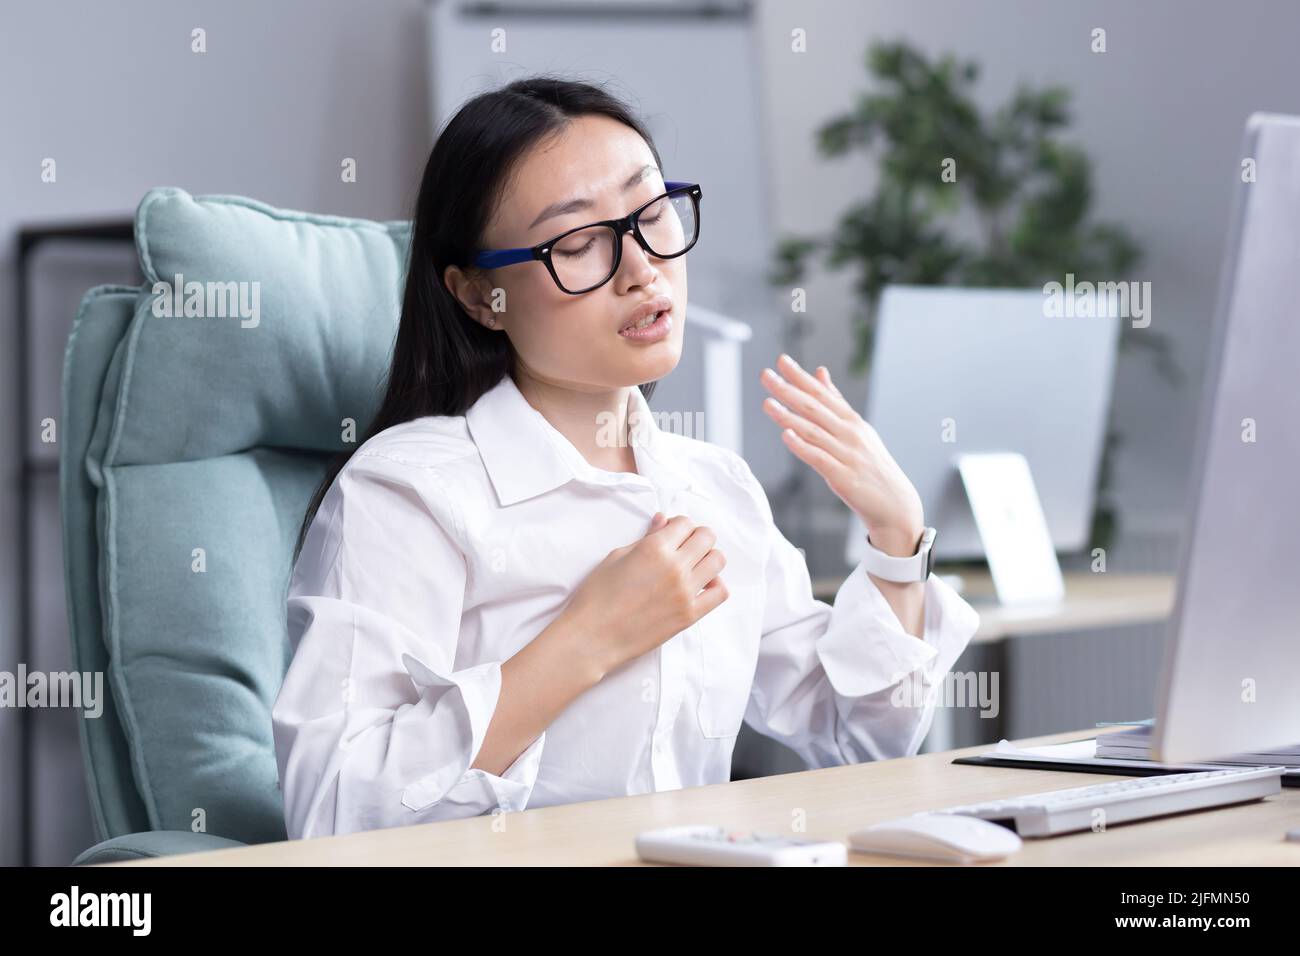 Calore in ufficio, donna asiatica che cerca di rinfrescarsi, donna d'affari che lavora al computer, agitando le mani per raffreddarsi. Foto Stock